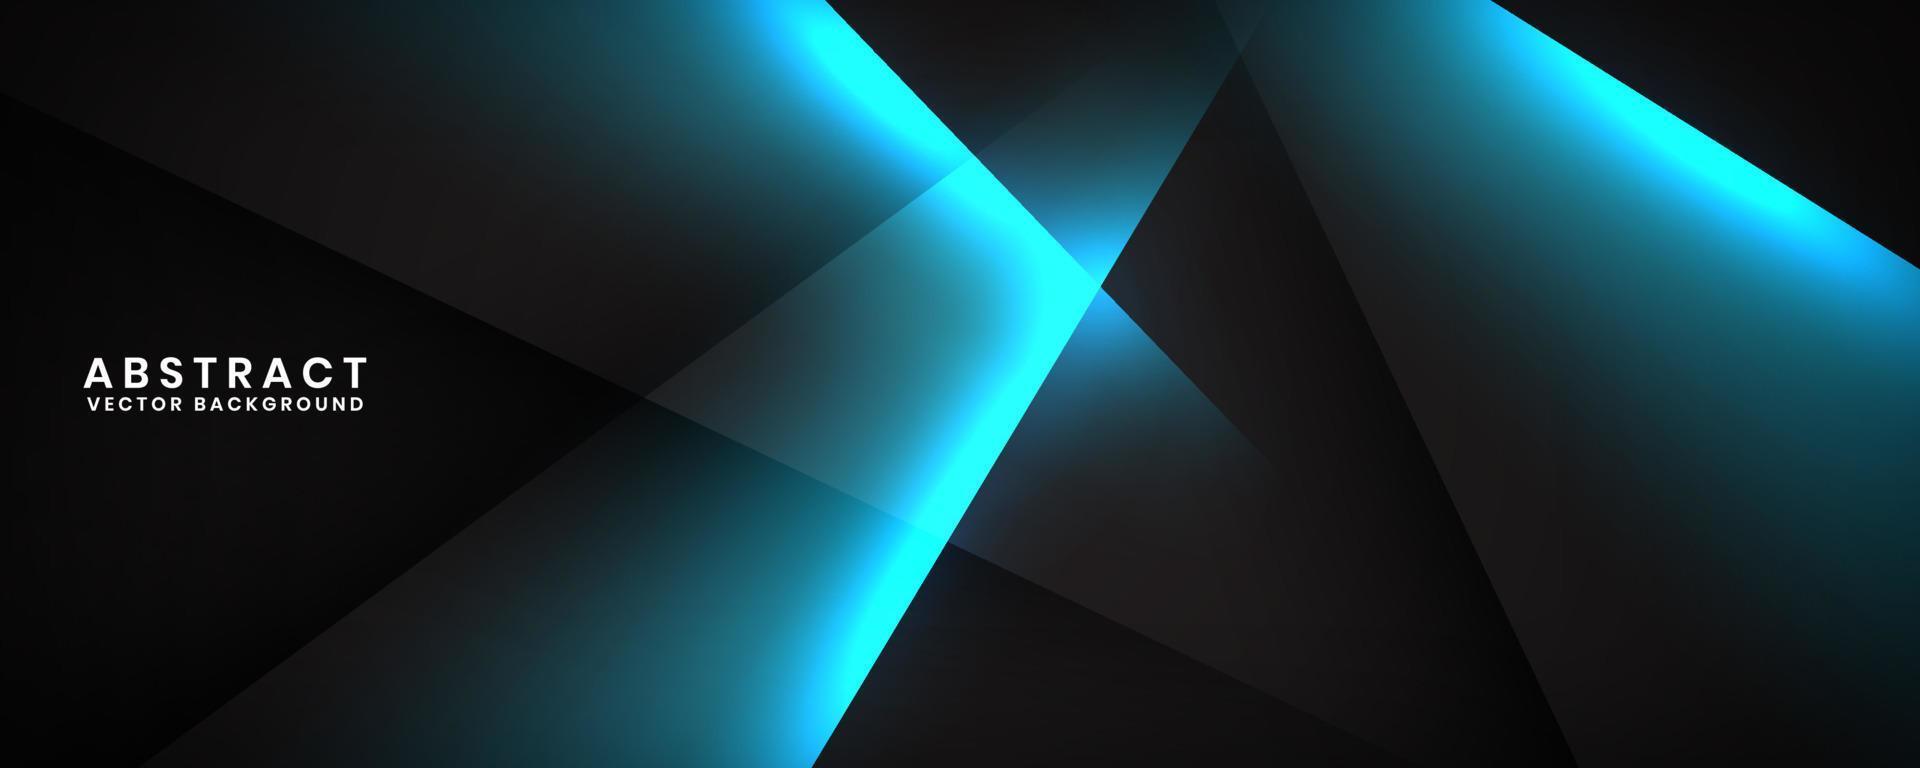 3d zwart techno abstract achtergrond overlappen laag Aan donker ruimte met blauw licht effect decoratie. modern grafisch ontwerp element uitknippen stijl concept voor banier, folder, kaart, of brochure Hoes vector